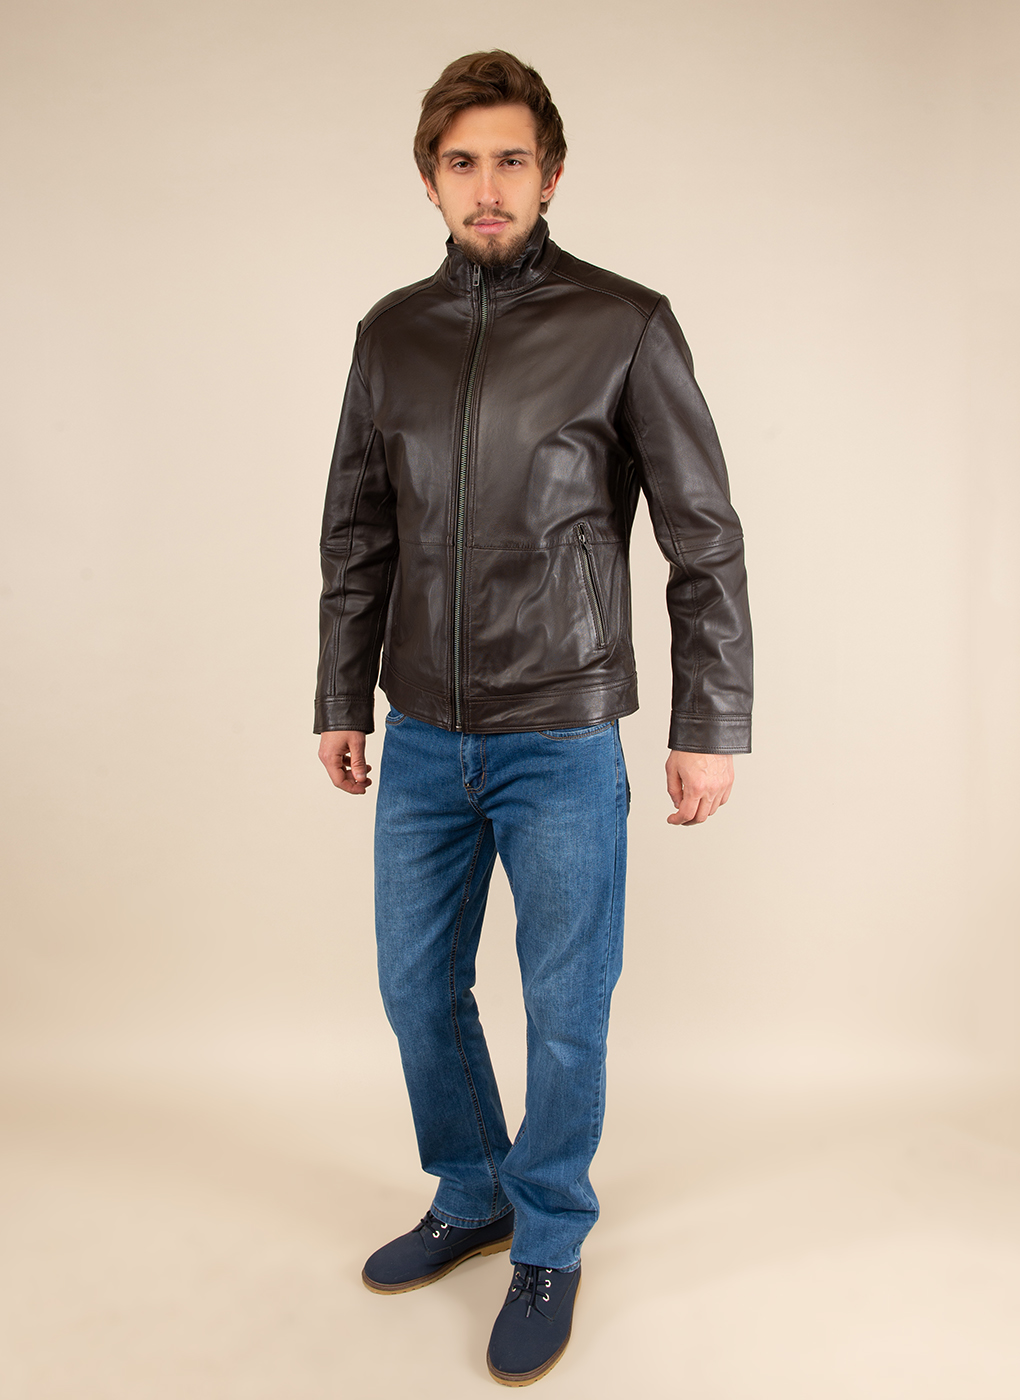 Кожаная куртка мужская Каляев 51795 коричневая 60 RU